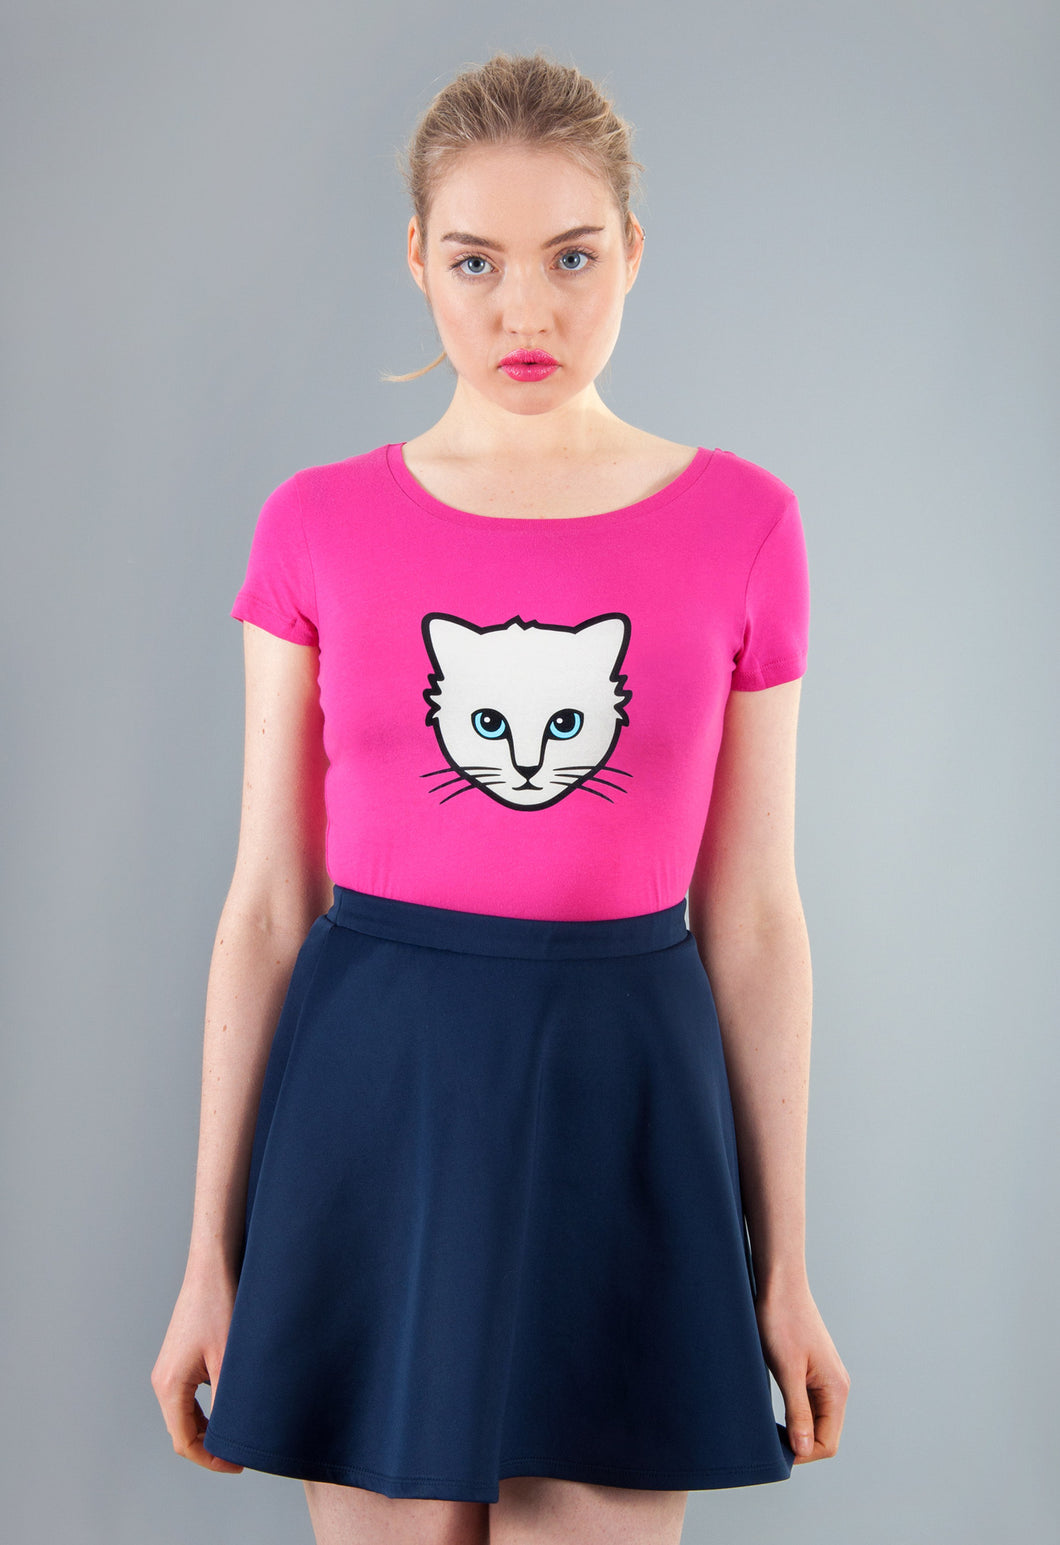 pink cat t-shirt